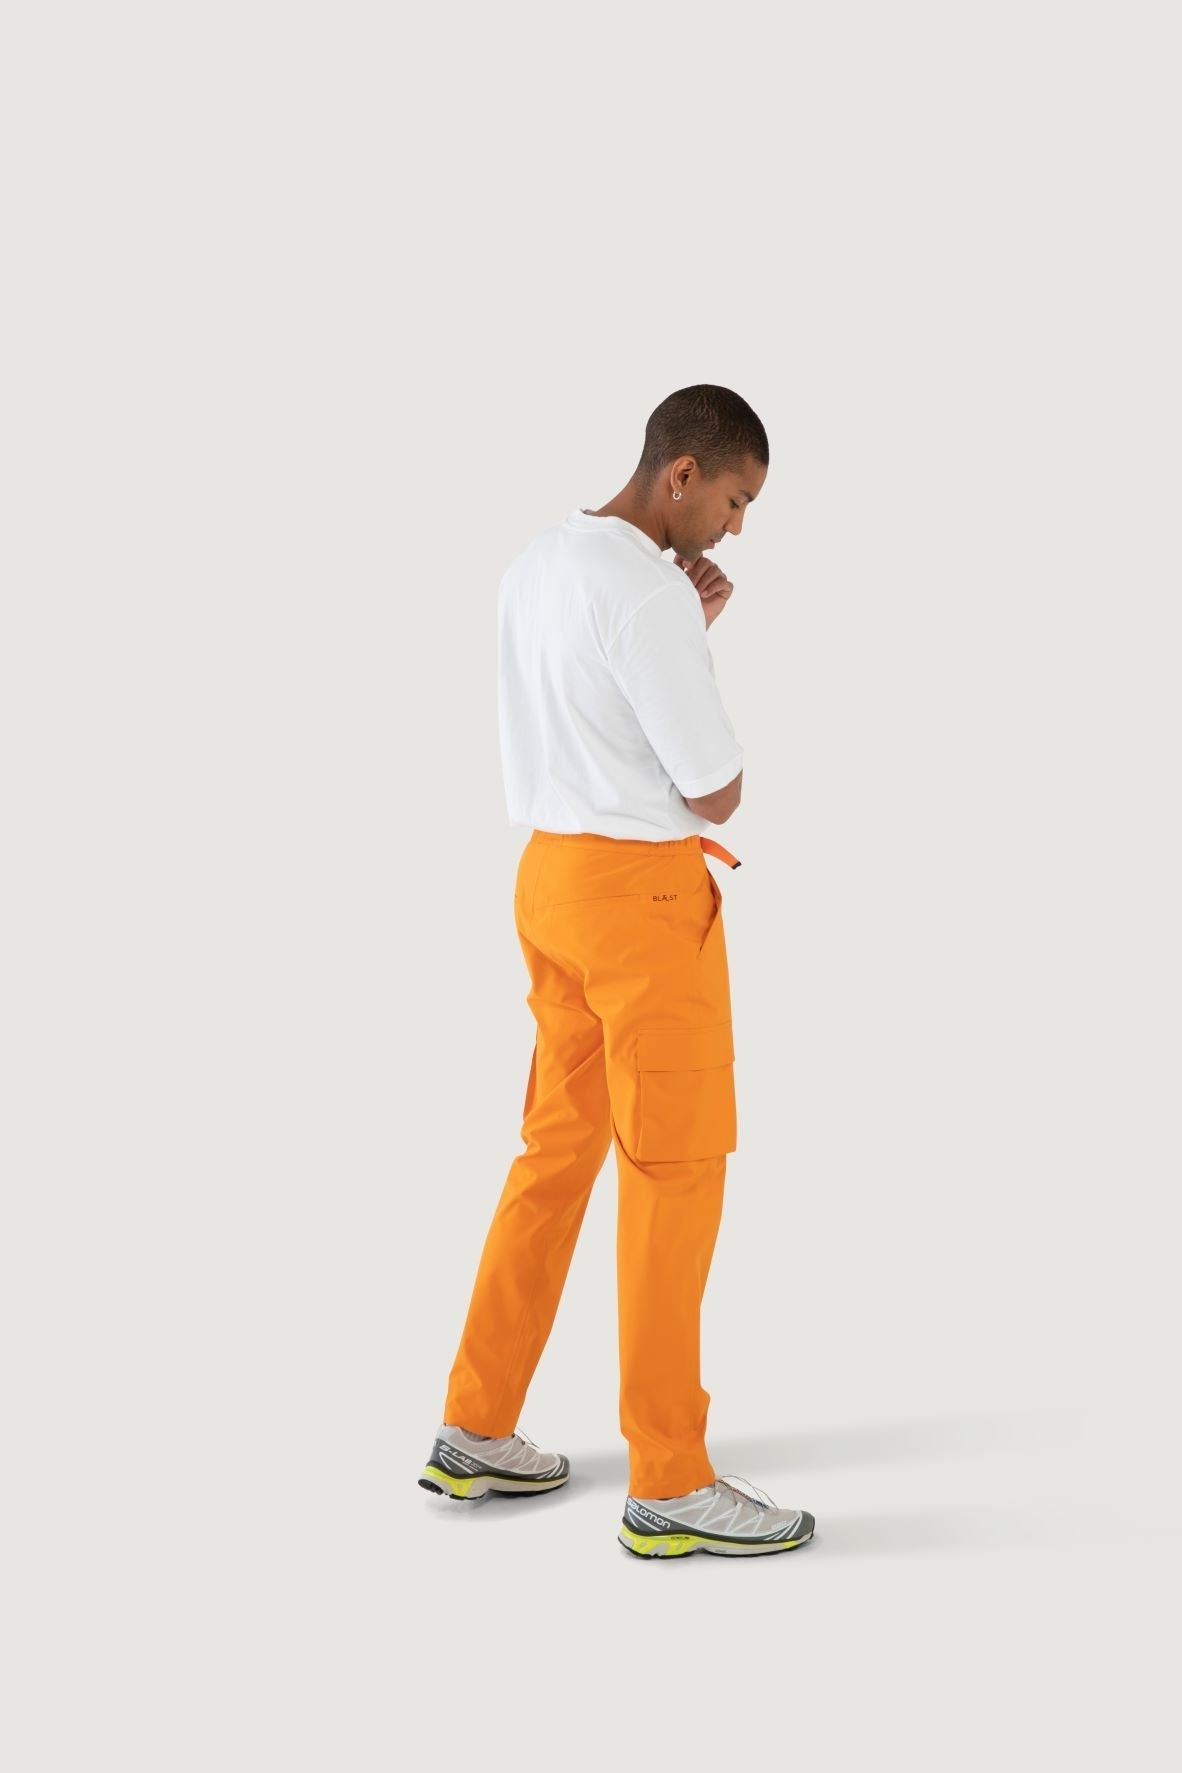 Model wearing Giske pant from Blæst in Orange